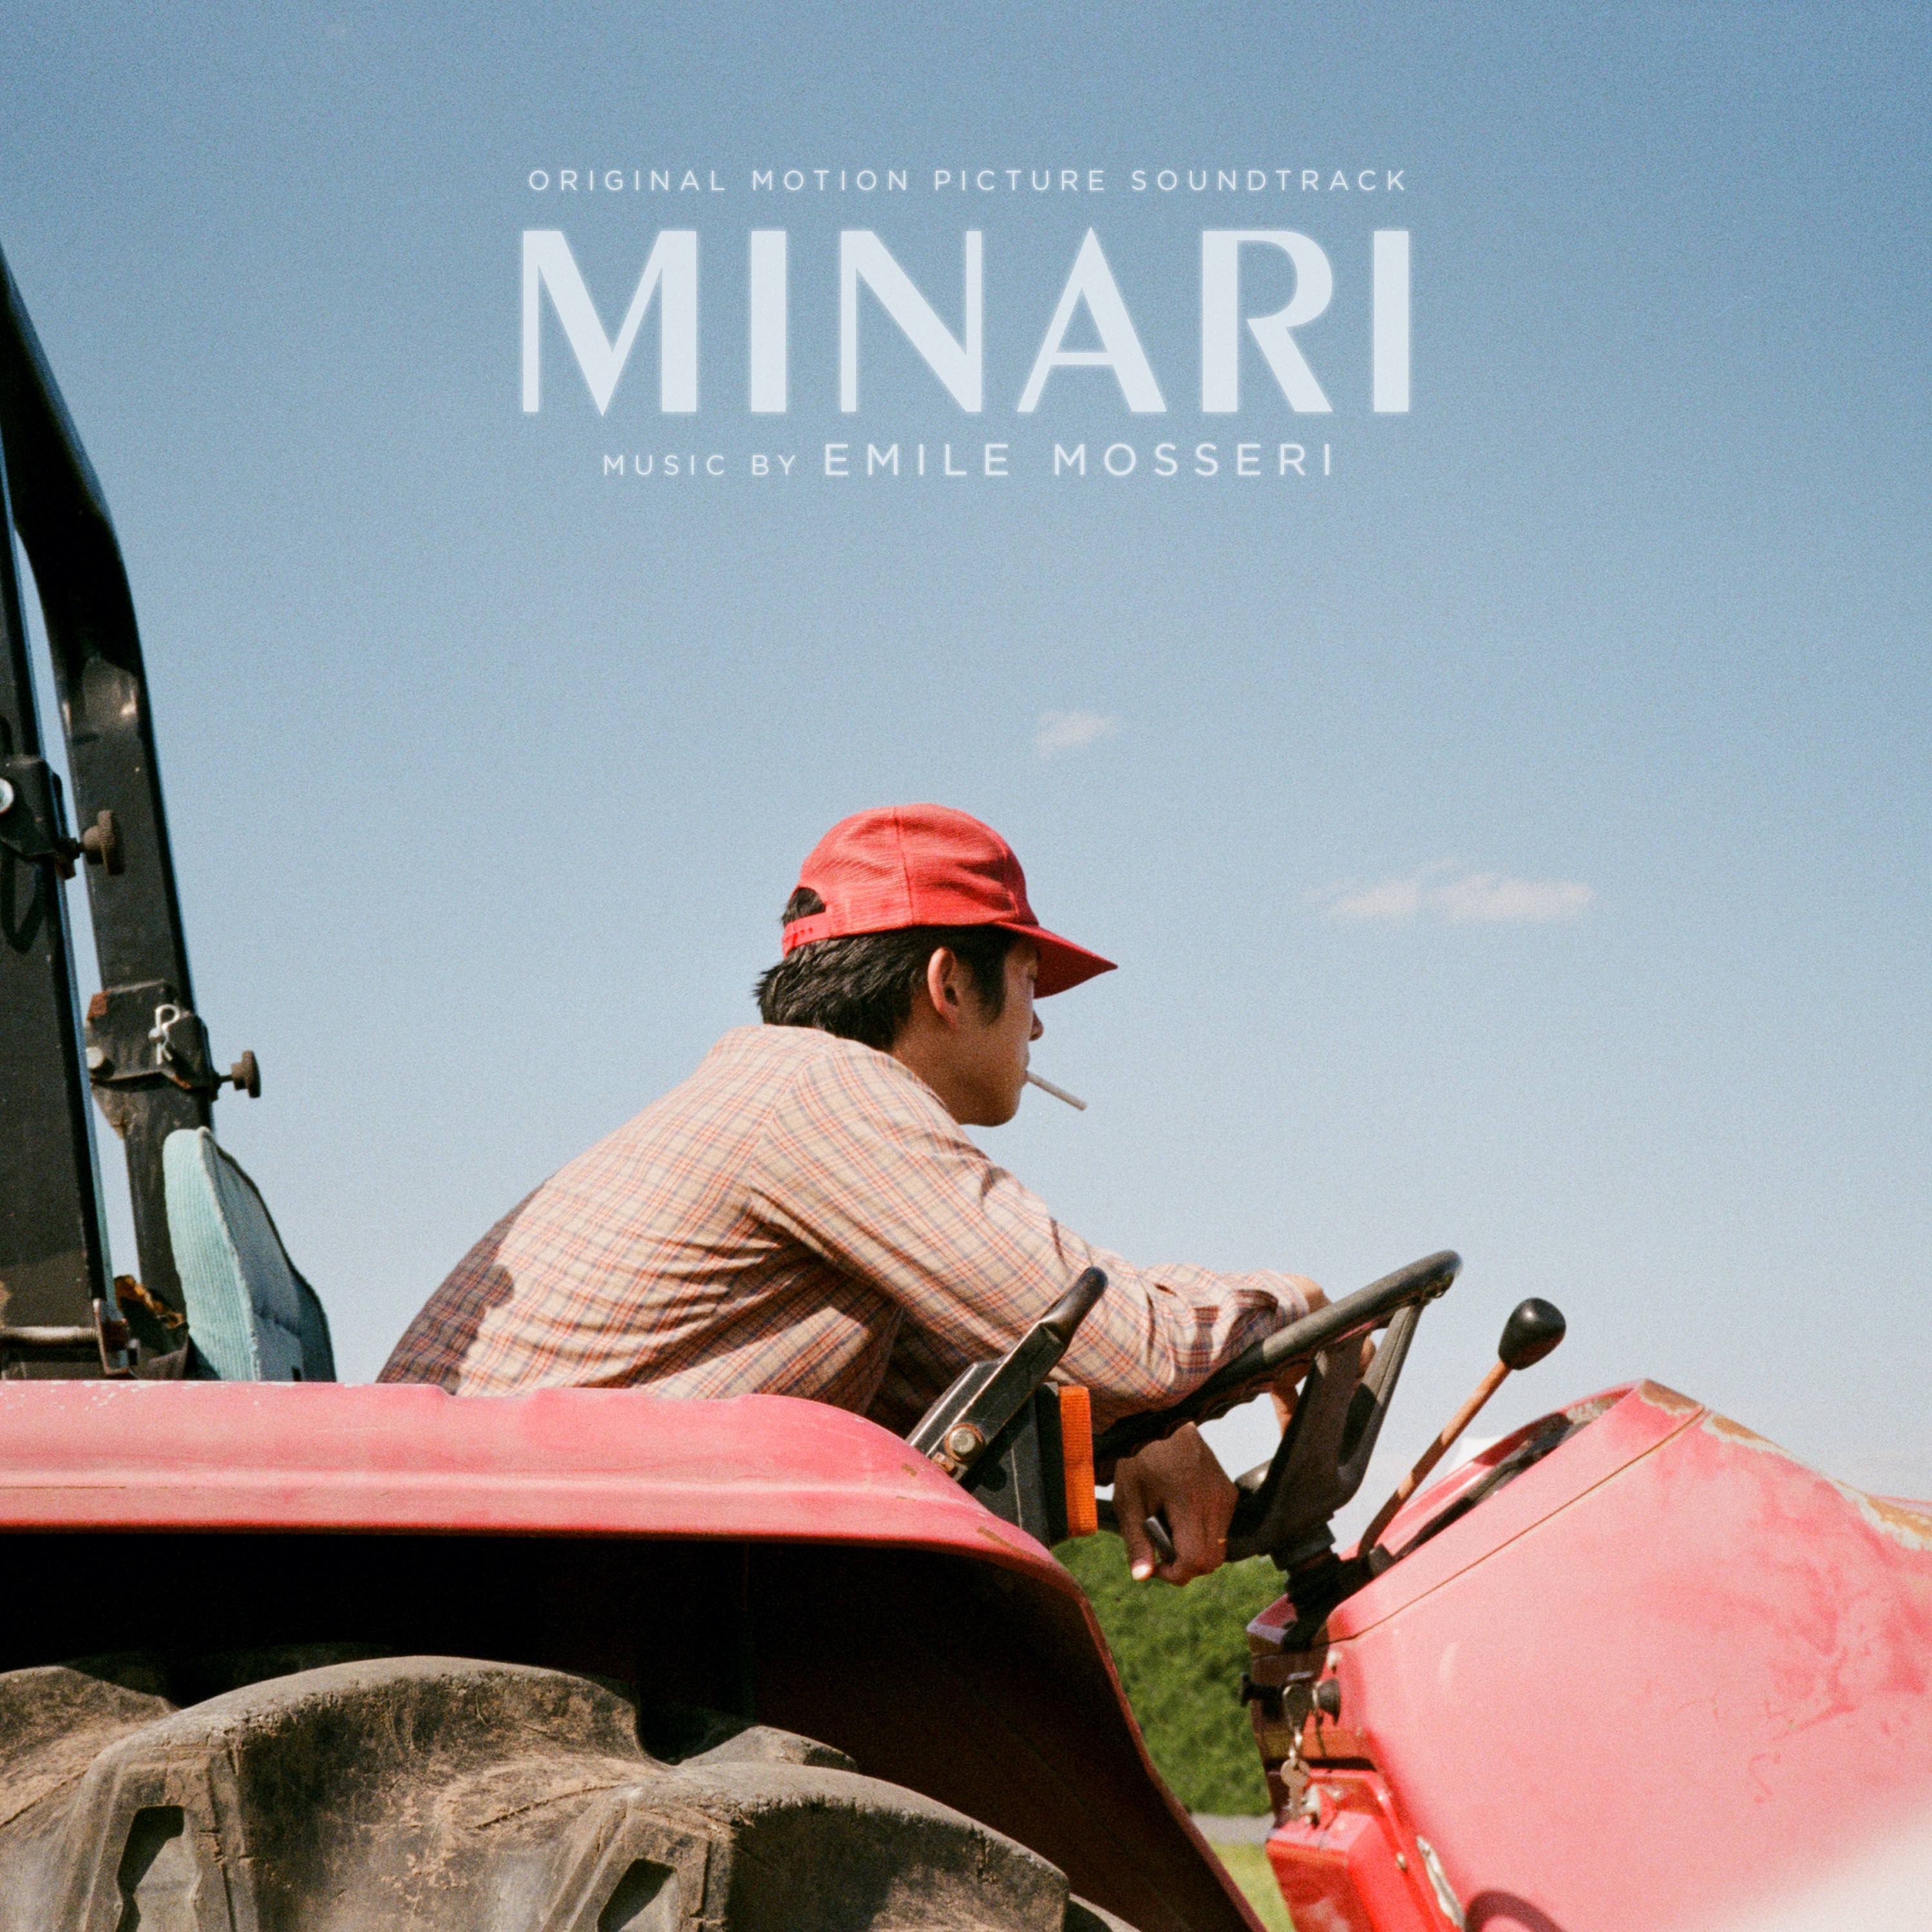 artwork for the Minari soundtrack by Emile Mosseri